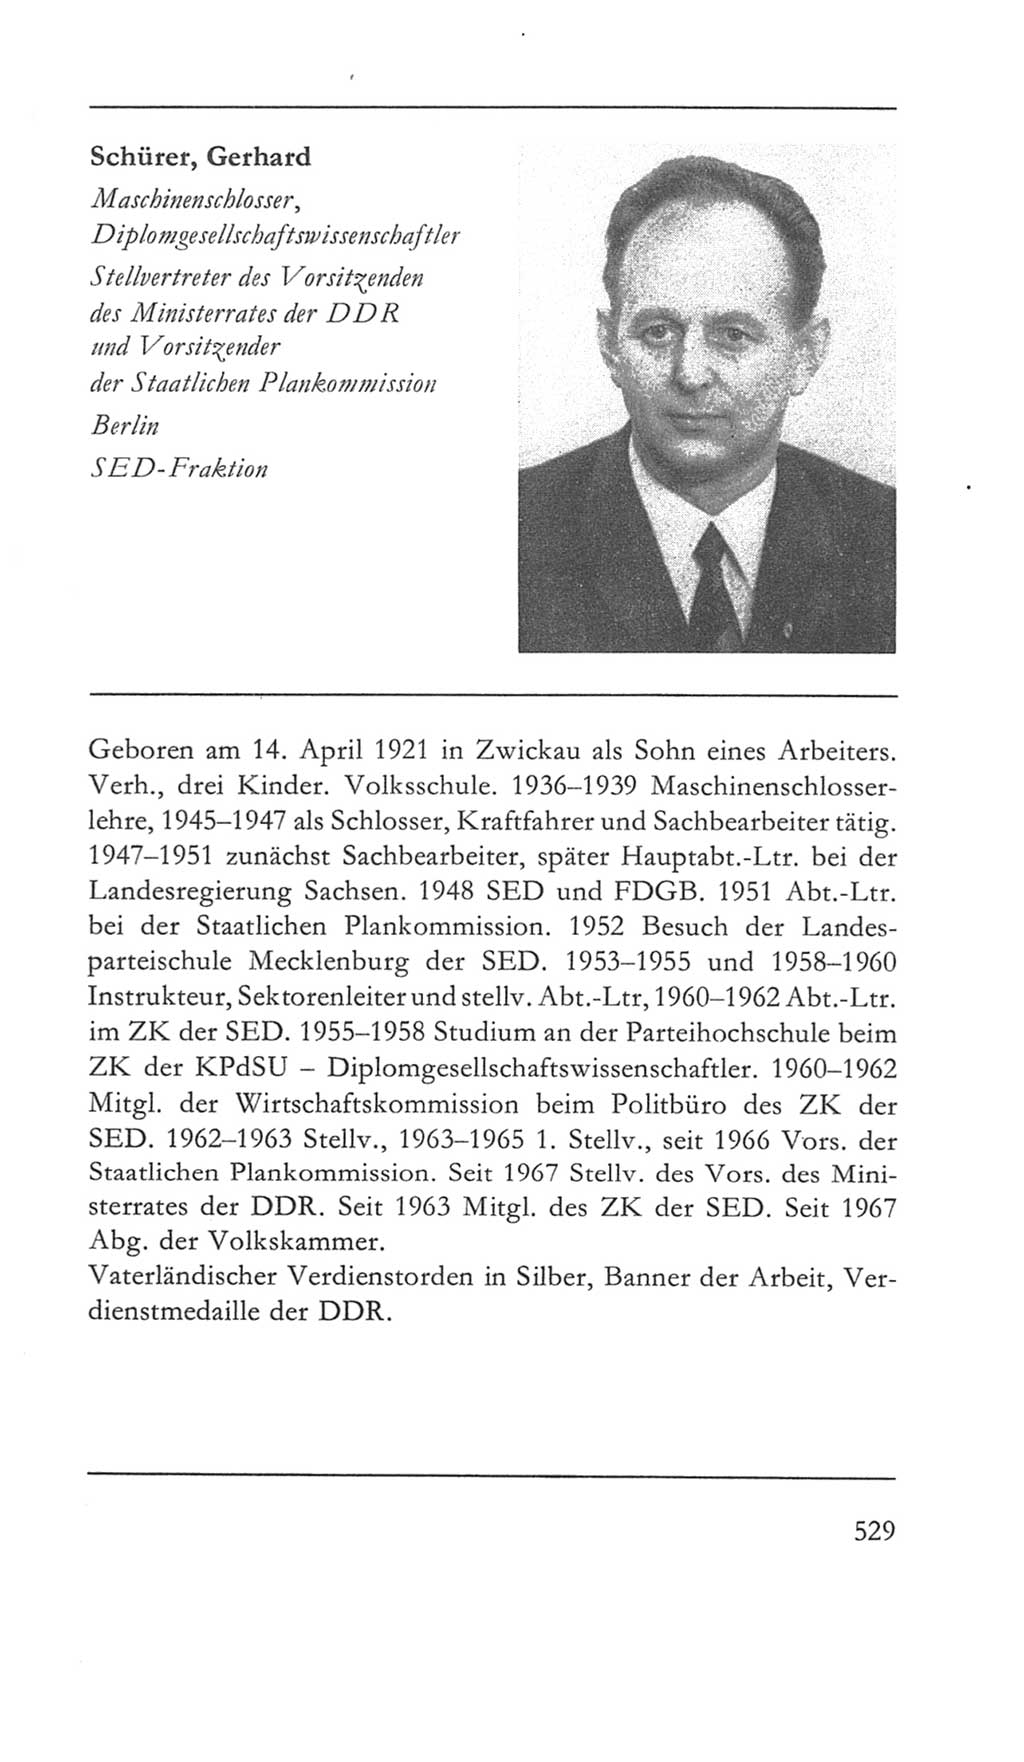 Volkskammer (VK) der Deutschen Demokratischen Republik (DDR) 5. Wahlperiode 1967-1971, Seite 529 (VK. DDR 5. WP. 1967-1971, S. 529)